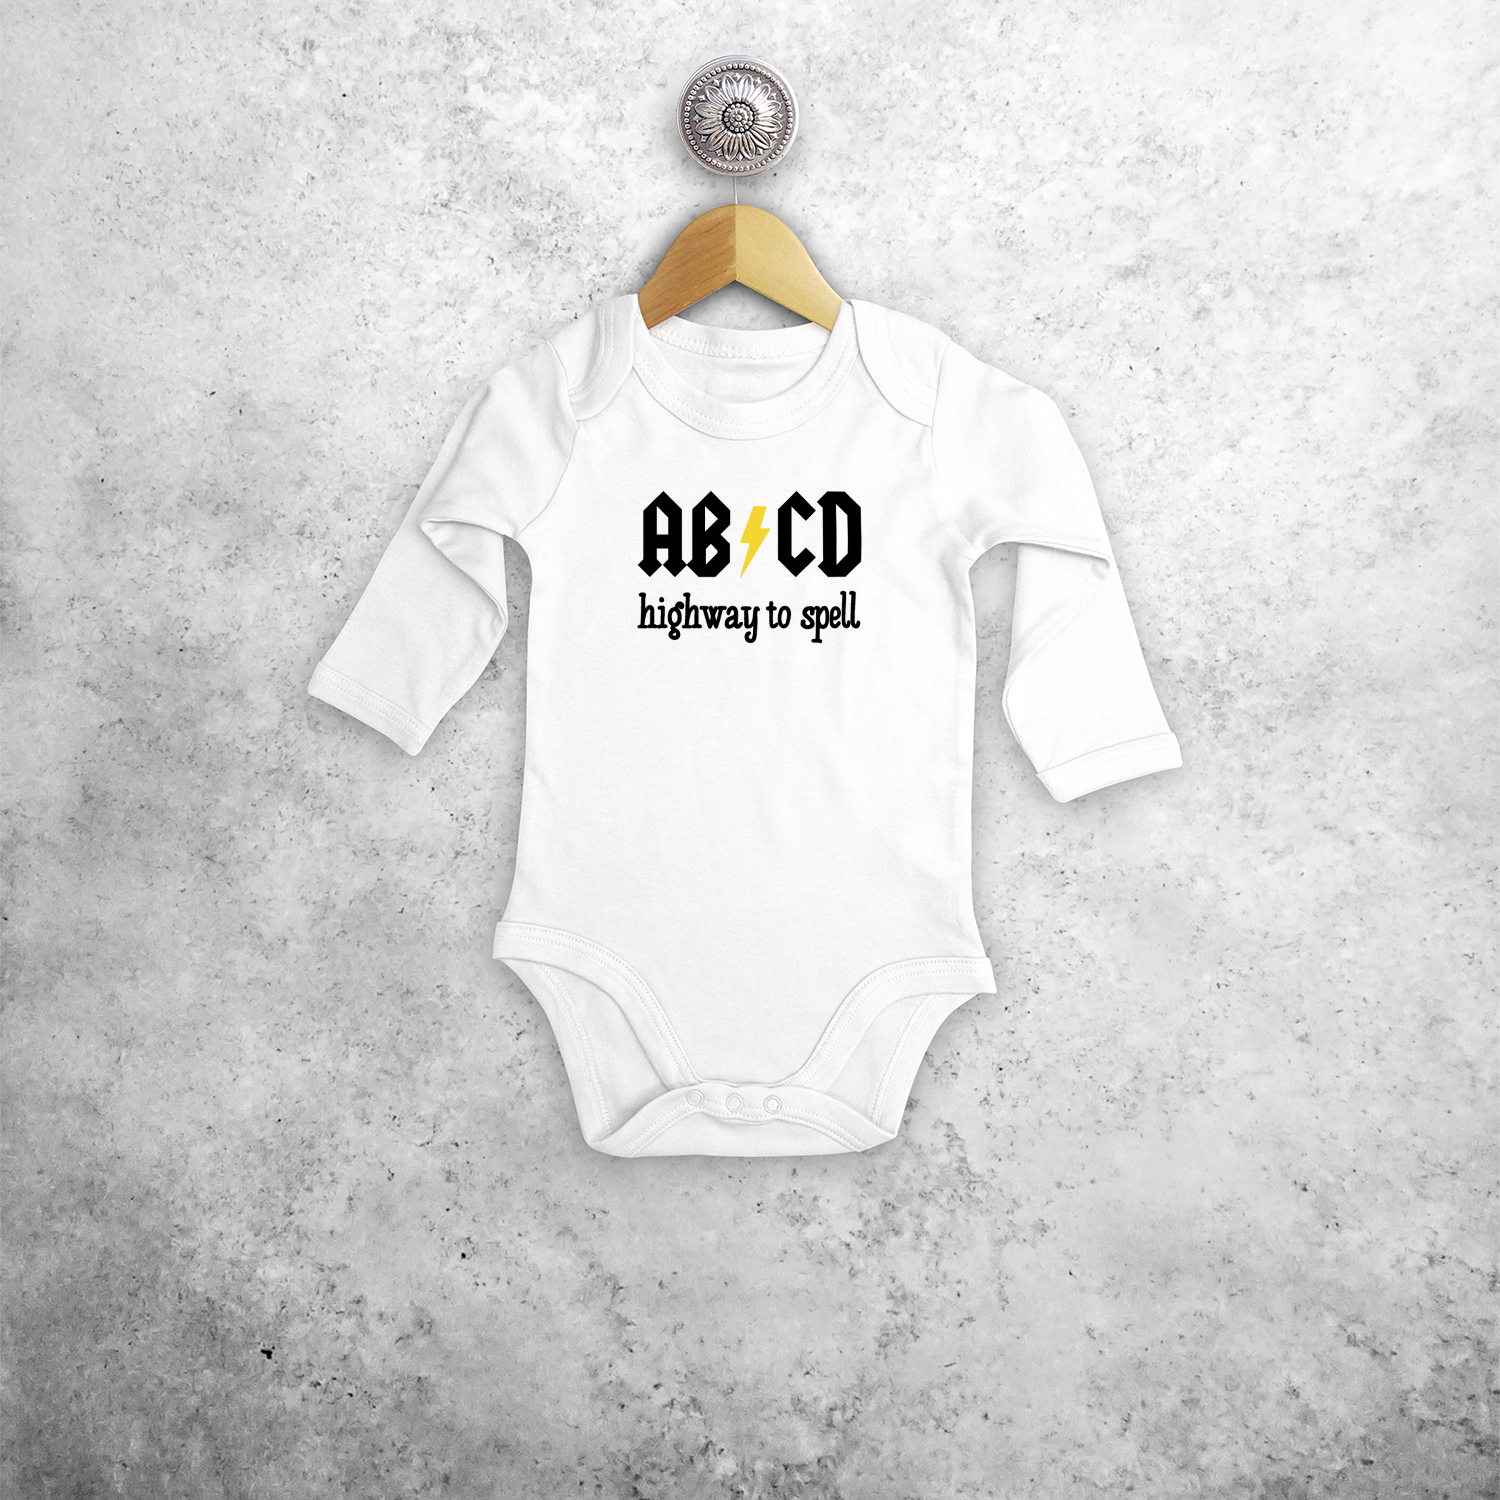 ABCD - Highway to spell' baby kruippakje met lange mouwen